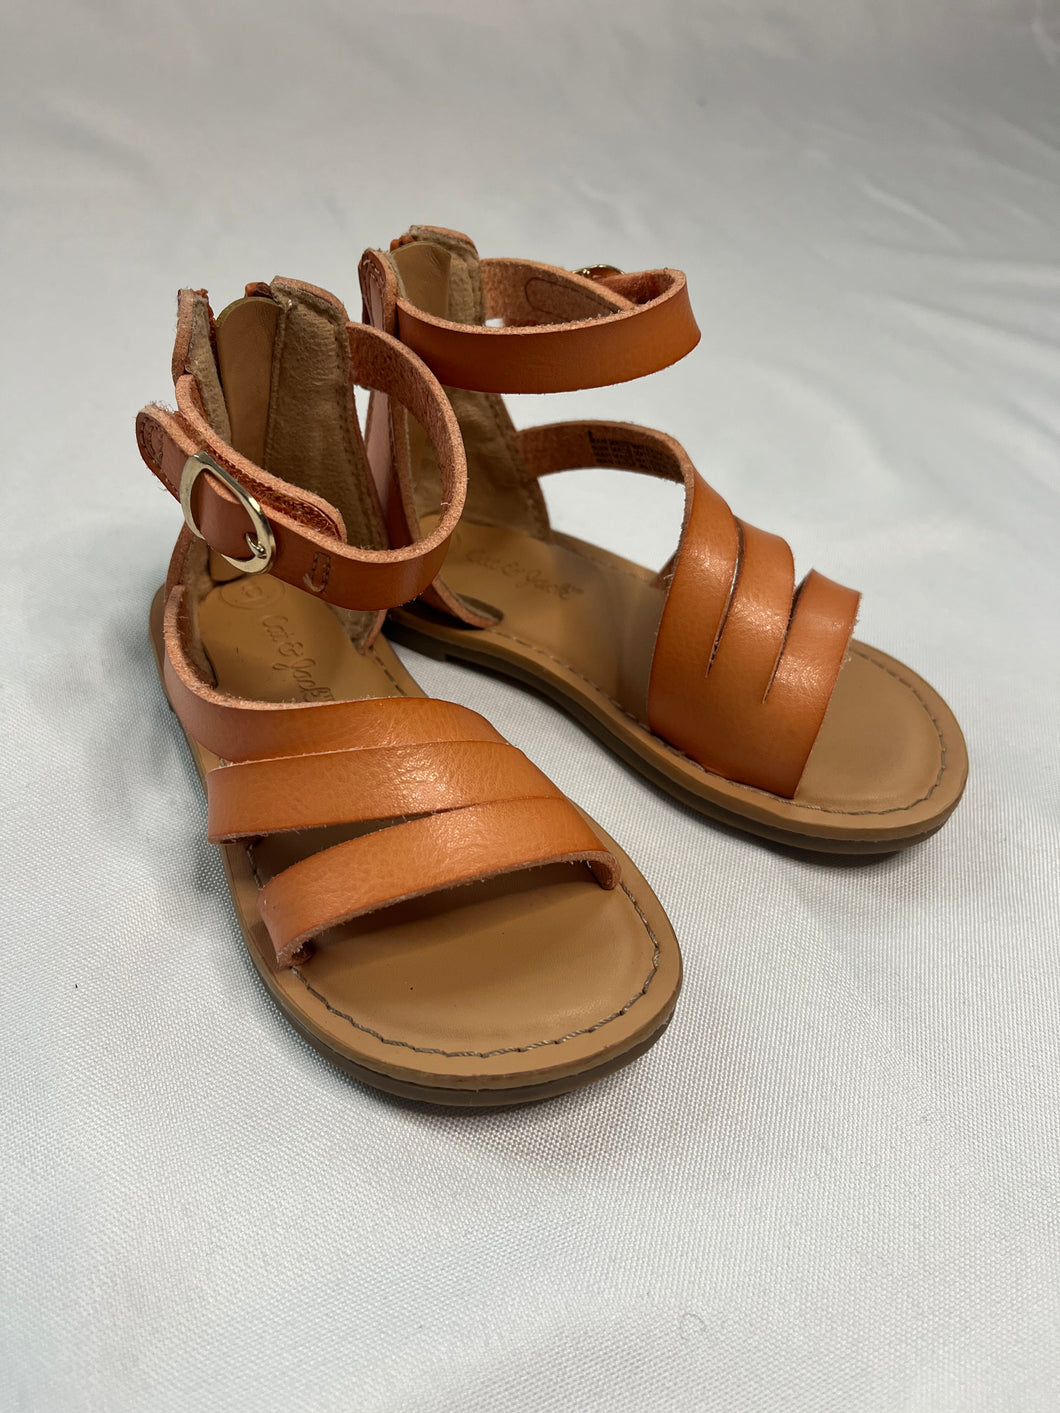 Sandals, Size 6c